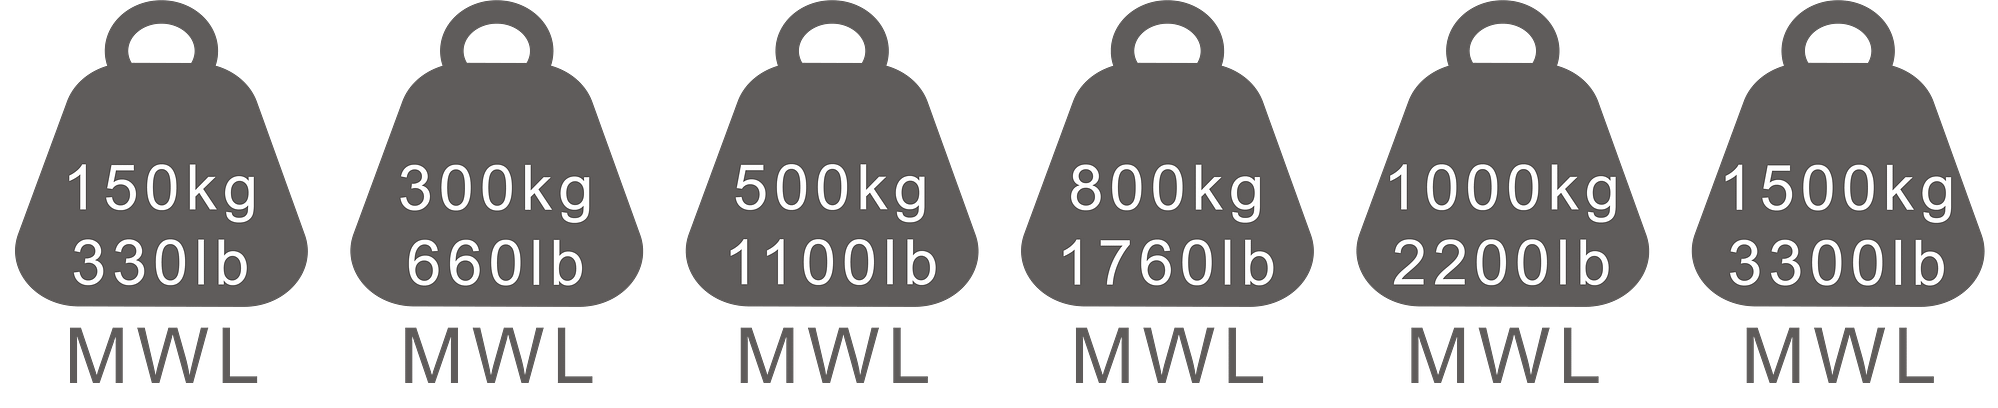 150-1500kg sizes